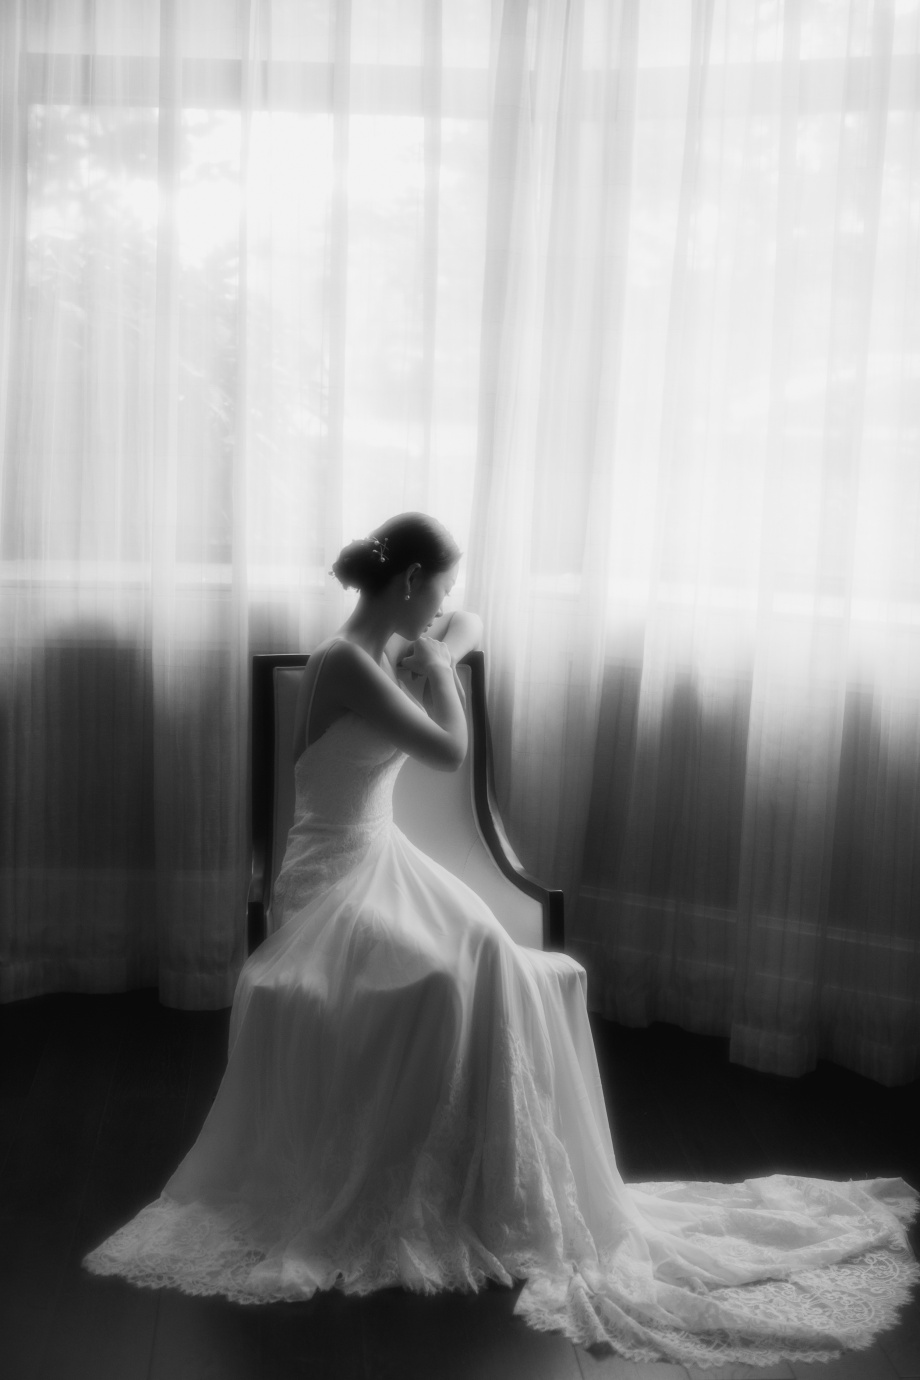 Chụp ảnh cưới trắng đen đẹp sự kết hợp hoàn mĩ giữa phong cách cổ ...